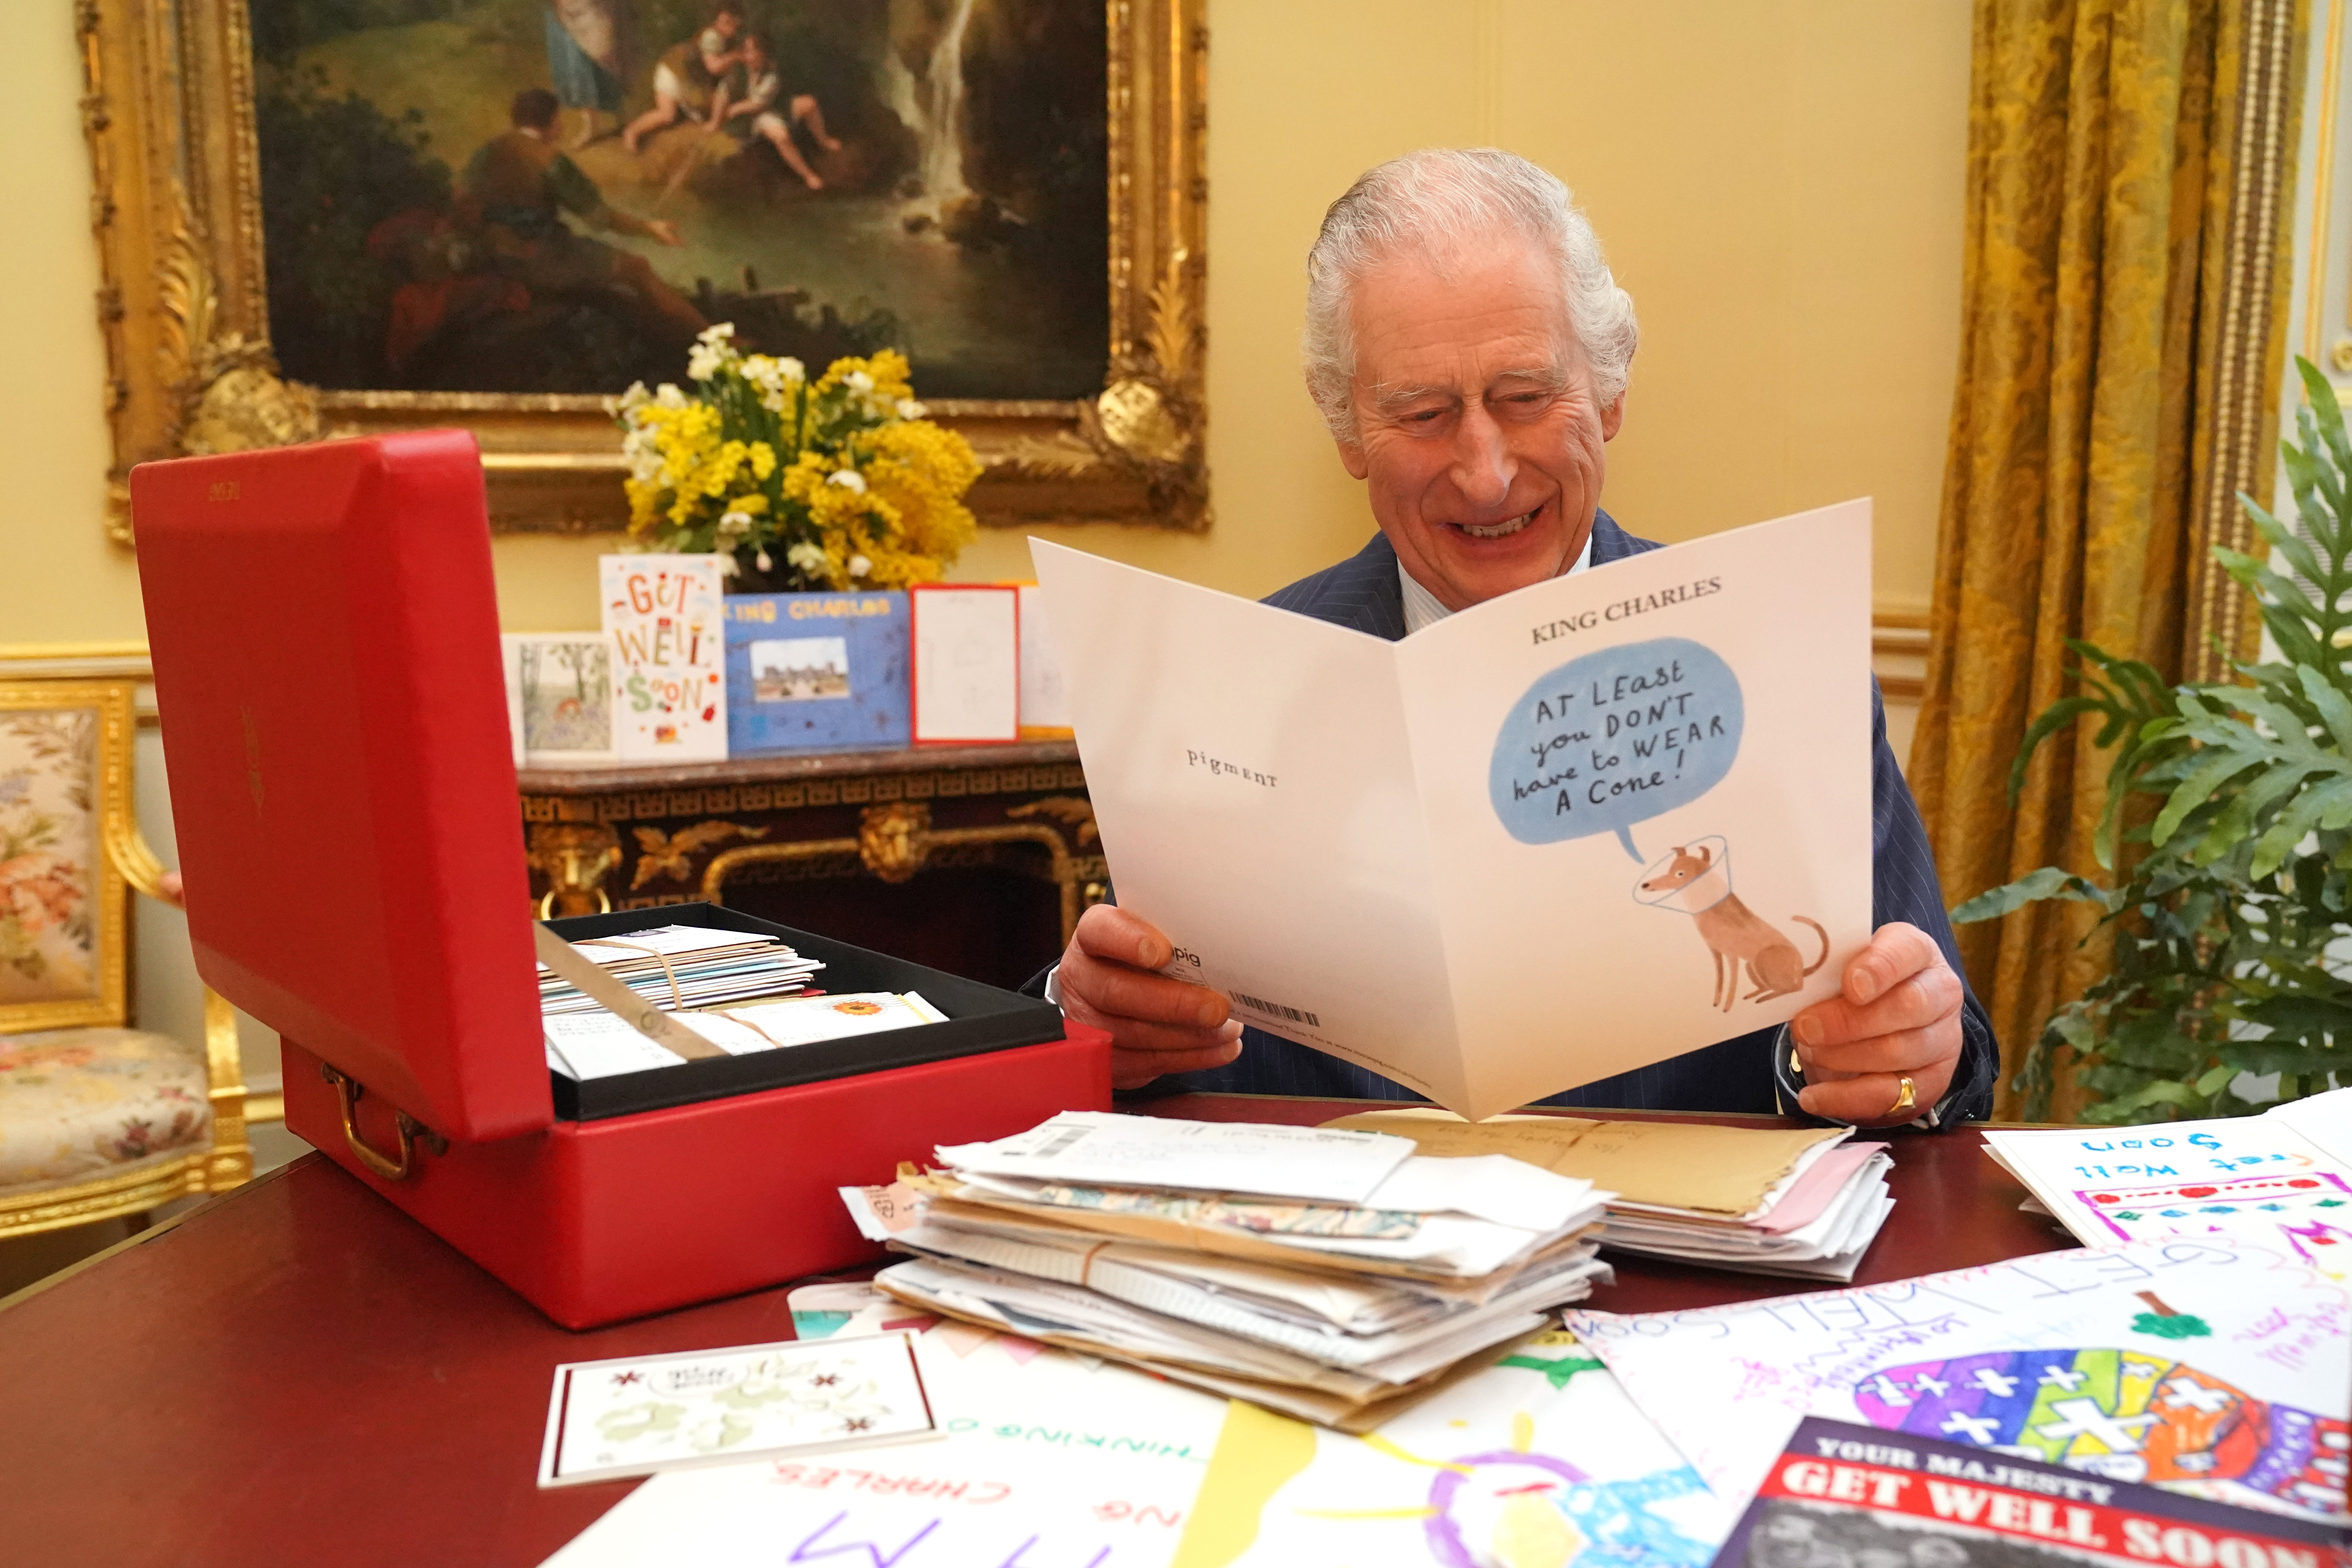 Le roi Charles lisant des cartes envoyées par des bienfaiteurs suite à son diagnostic de cancer, dans la salle du 18e siècle de la suite belge du palais de Buckingham, le 21 février 2024 à Londres, Angleterre | Source : Getty Images